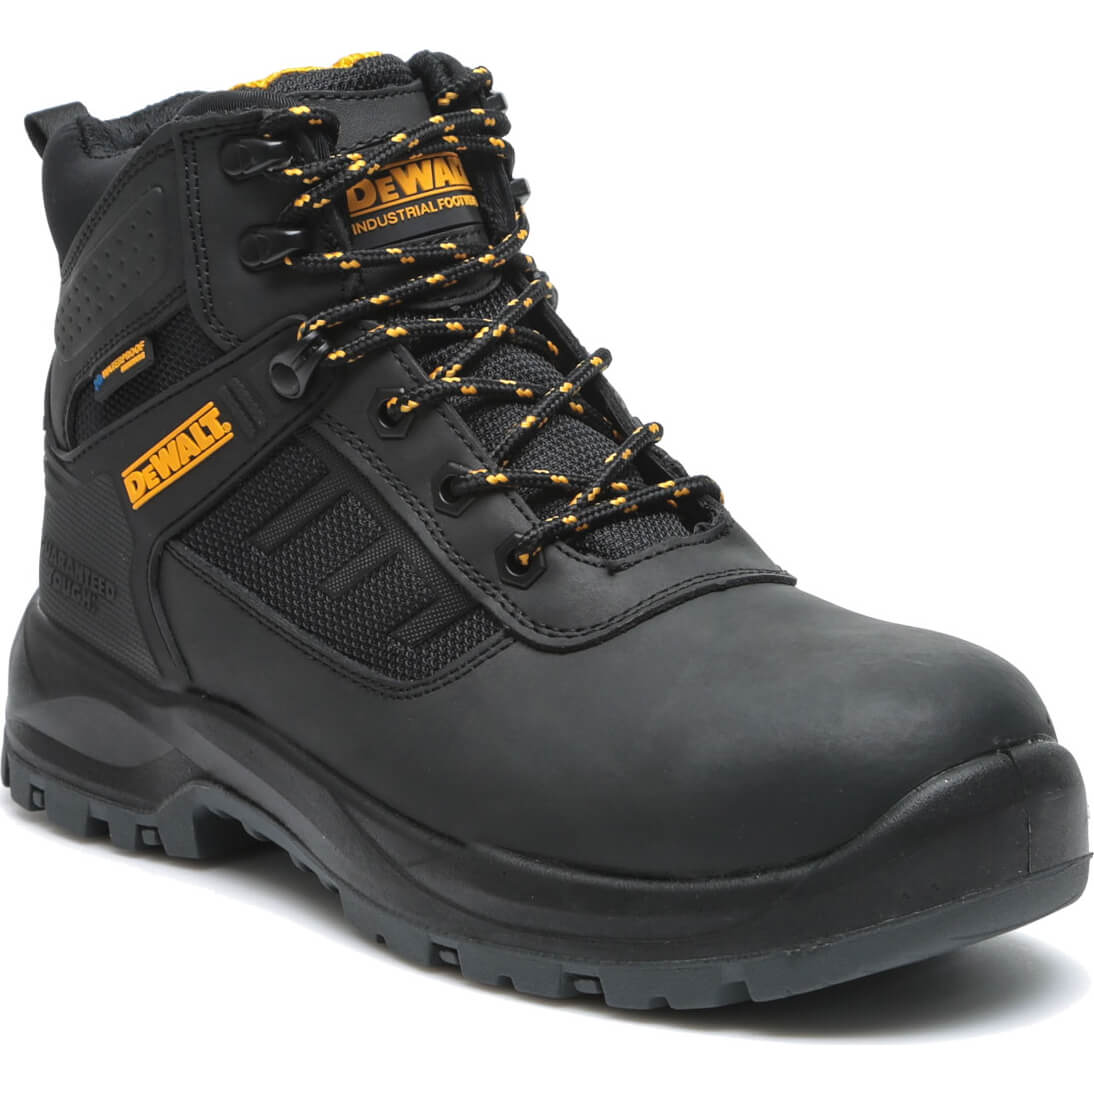 Photos - Safety Equipment DeWALT Douglas Waterproof Safety Boots Black Size 8 